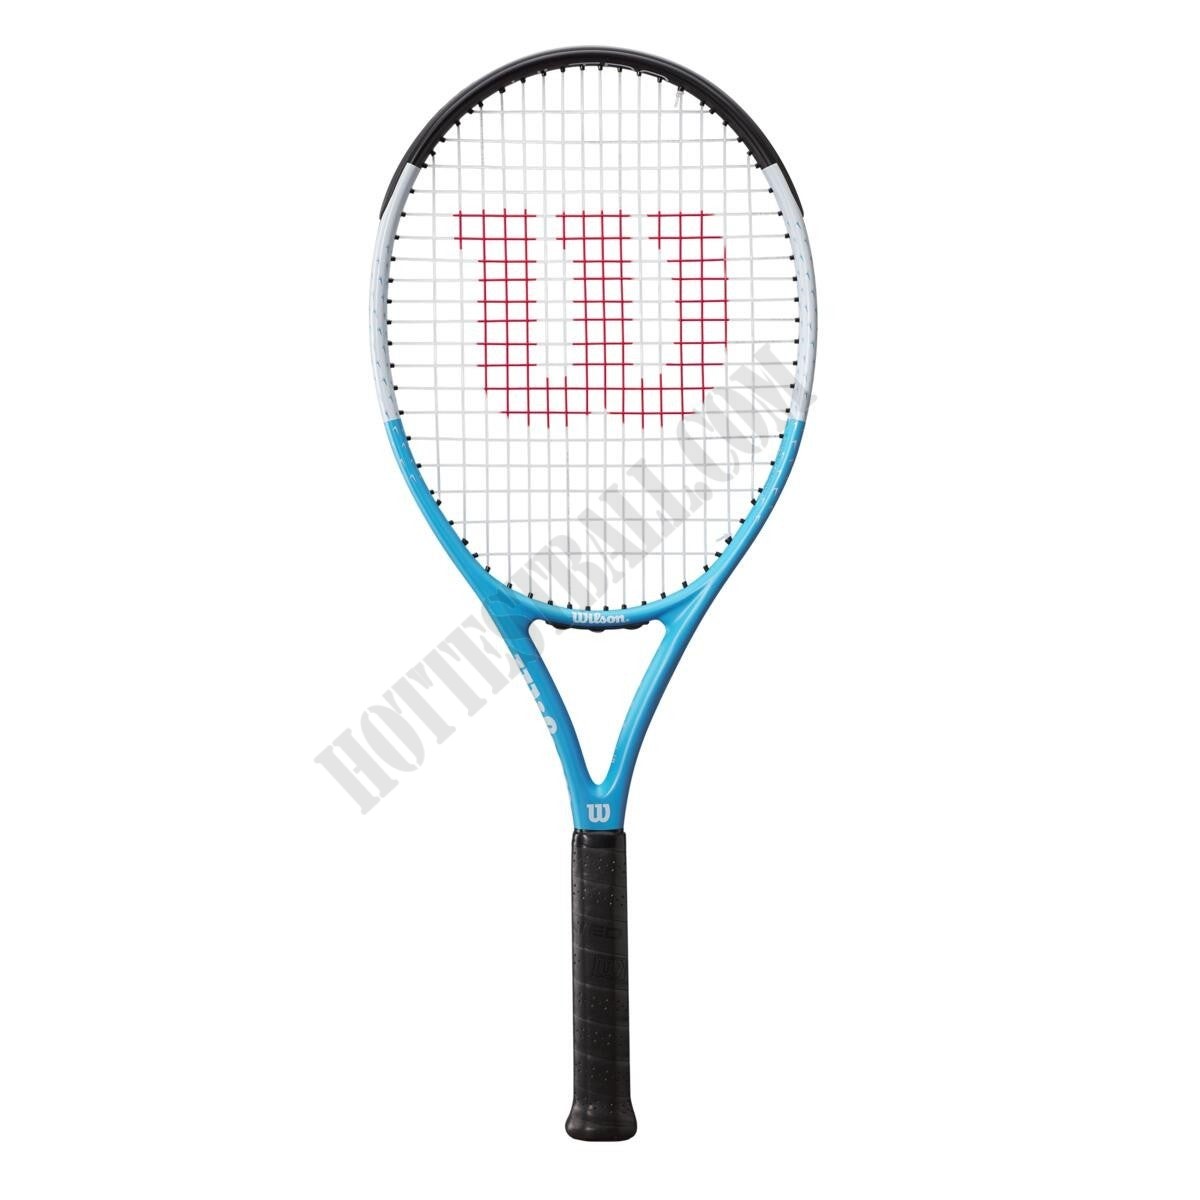 Ultra Power RXT 105 Tennis Racket - Wilson Discount Store - Ultra Power RXT 105 Tennis Racket - Wilson Discount Store